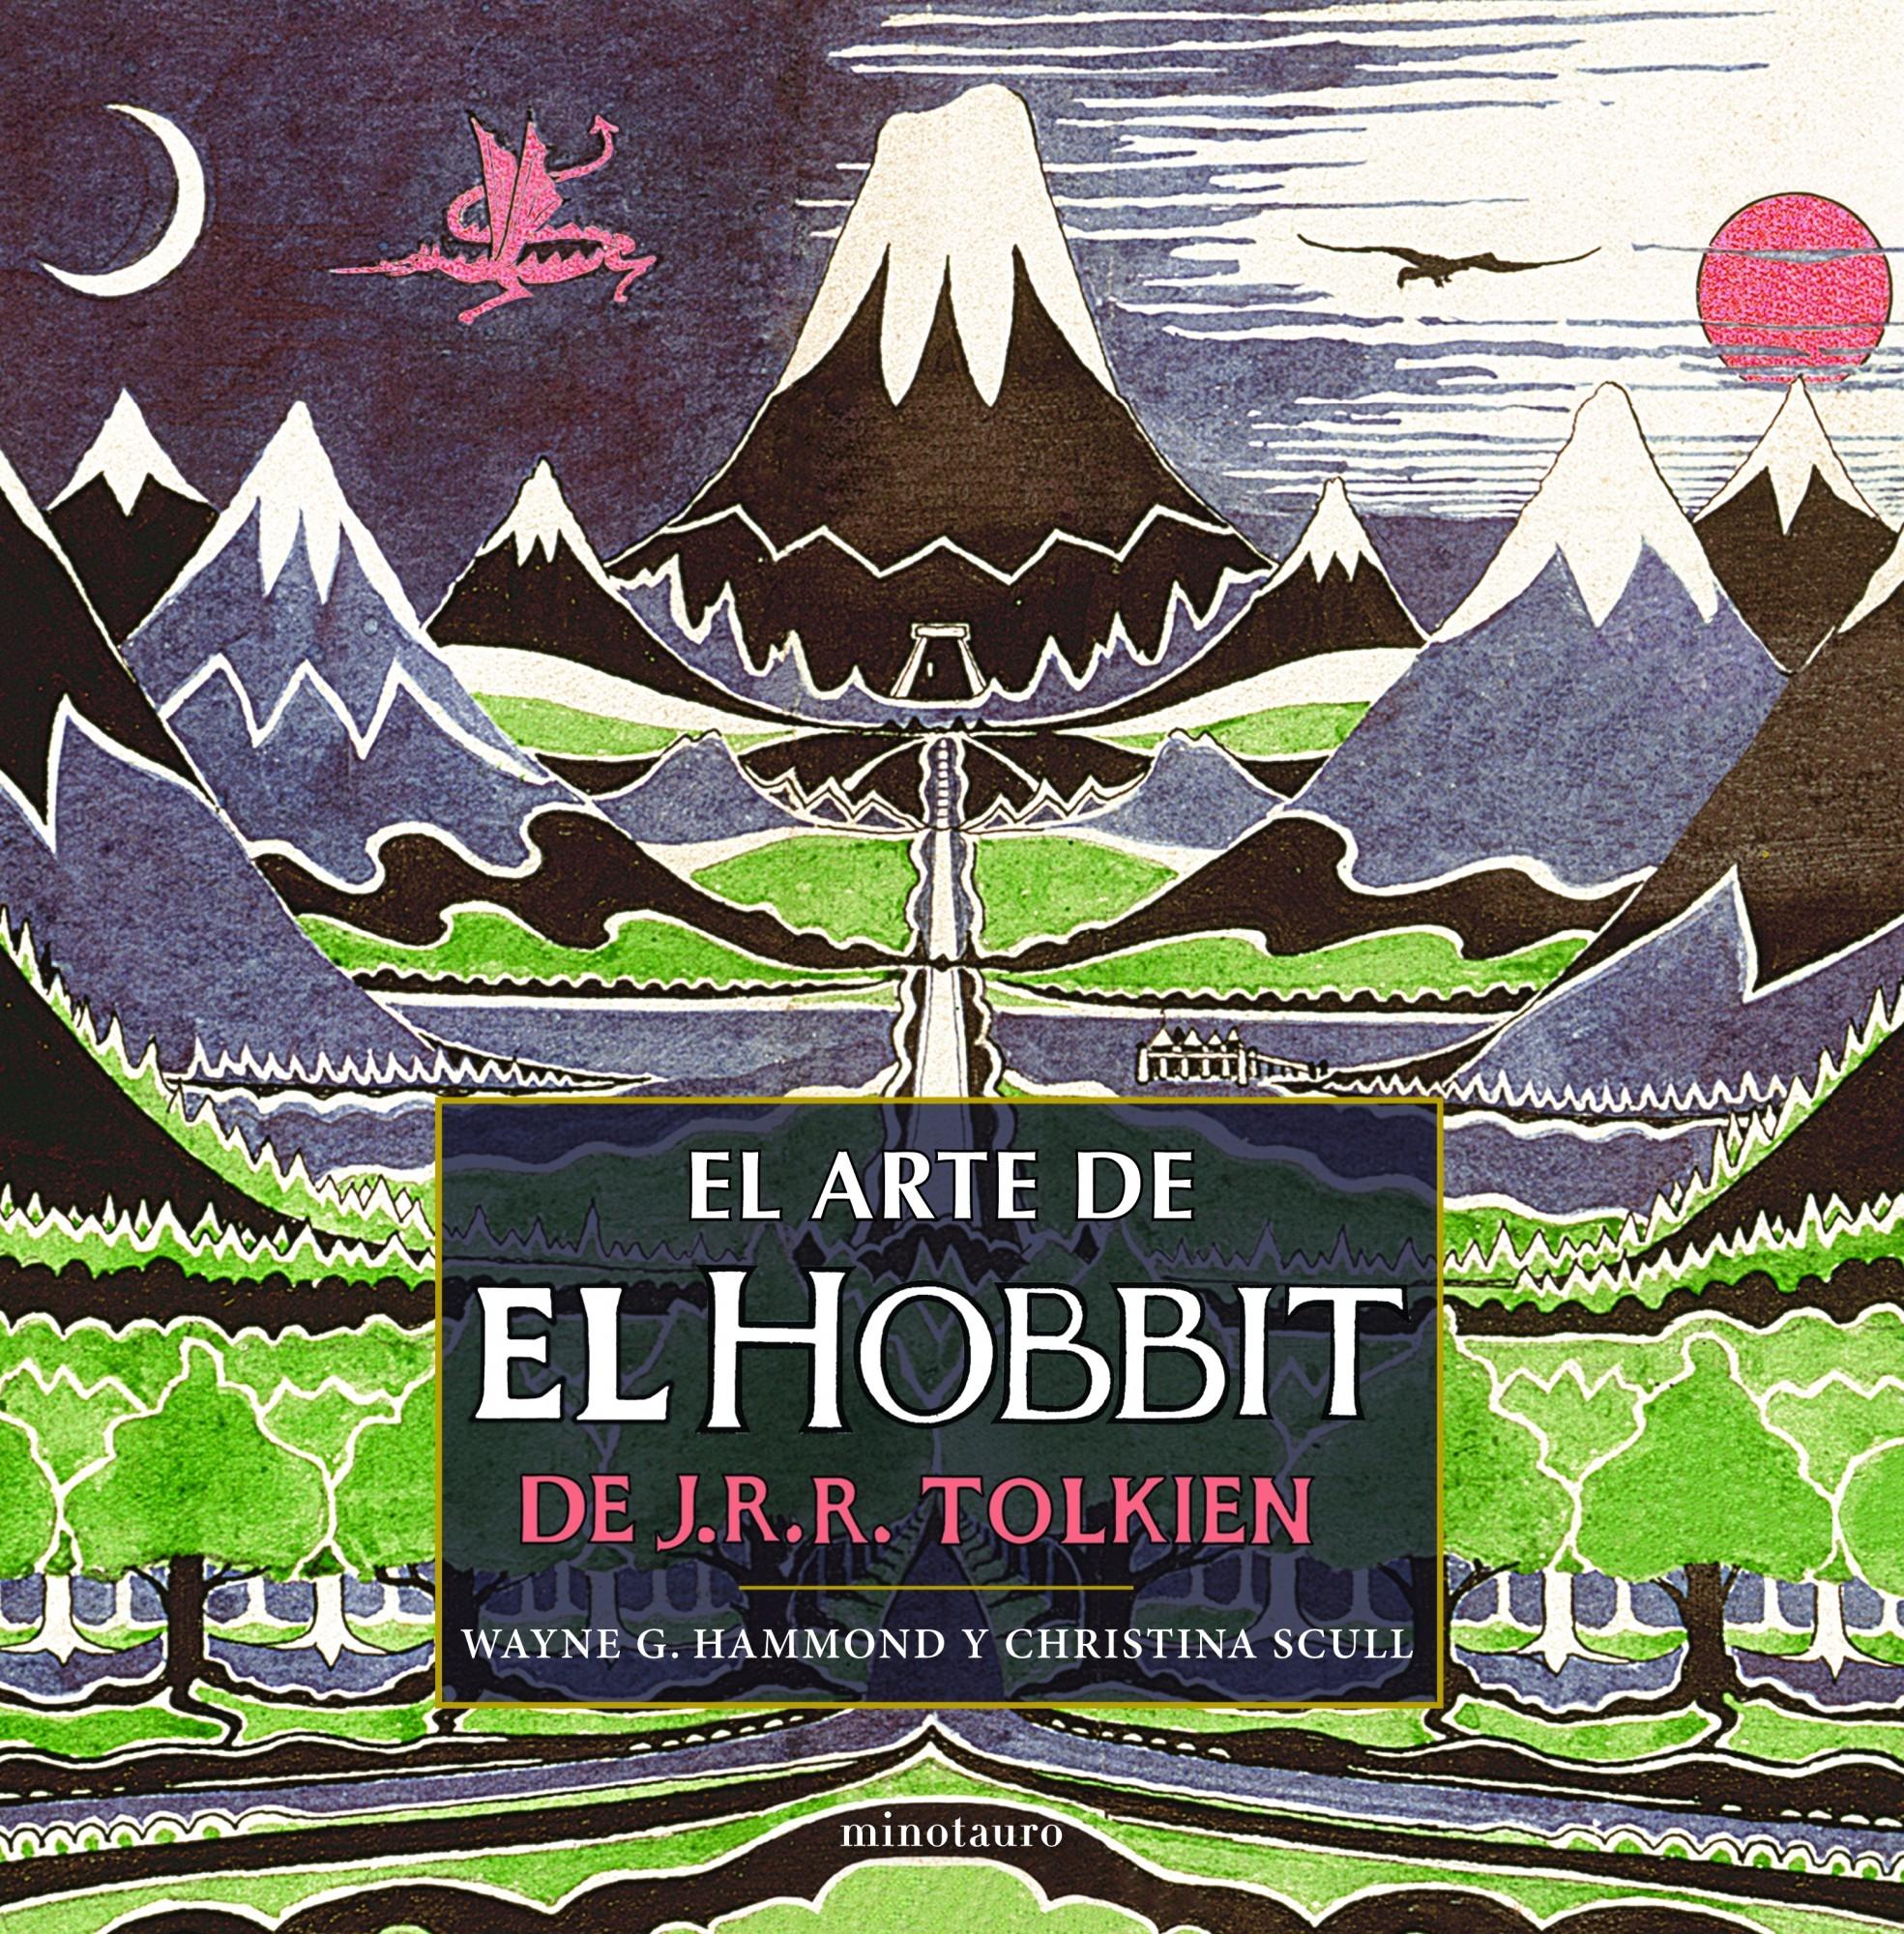 El arte de "El Hobbit" de J. R. R. Tolkien